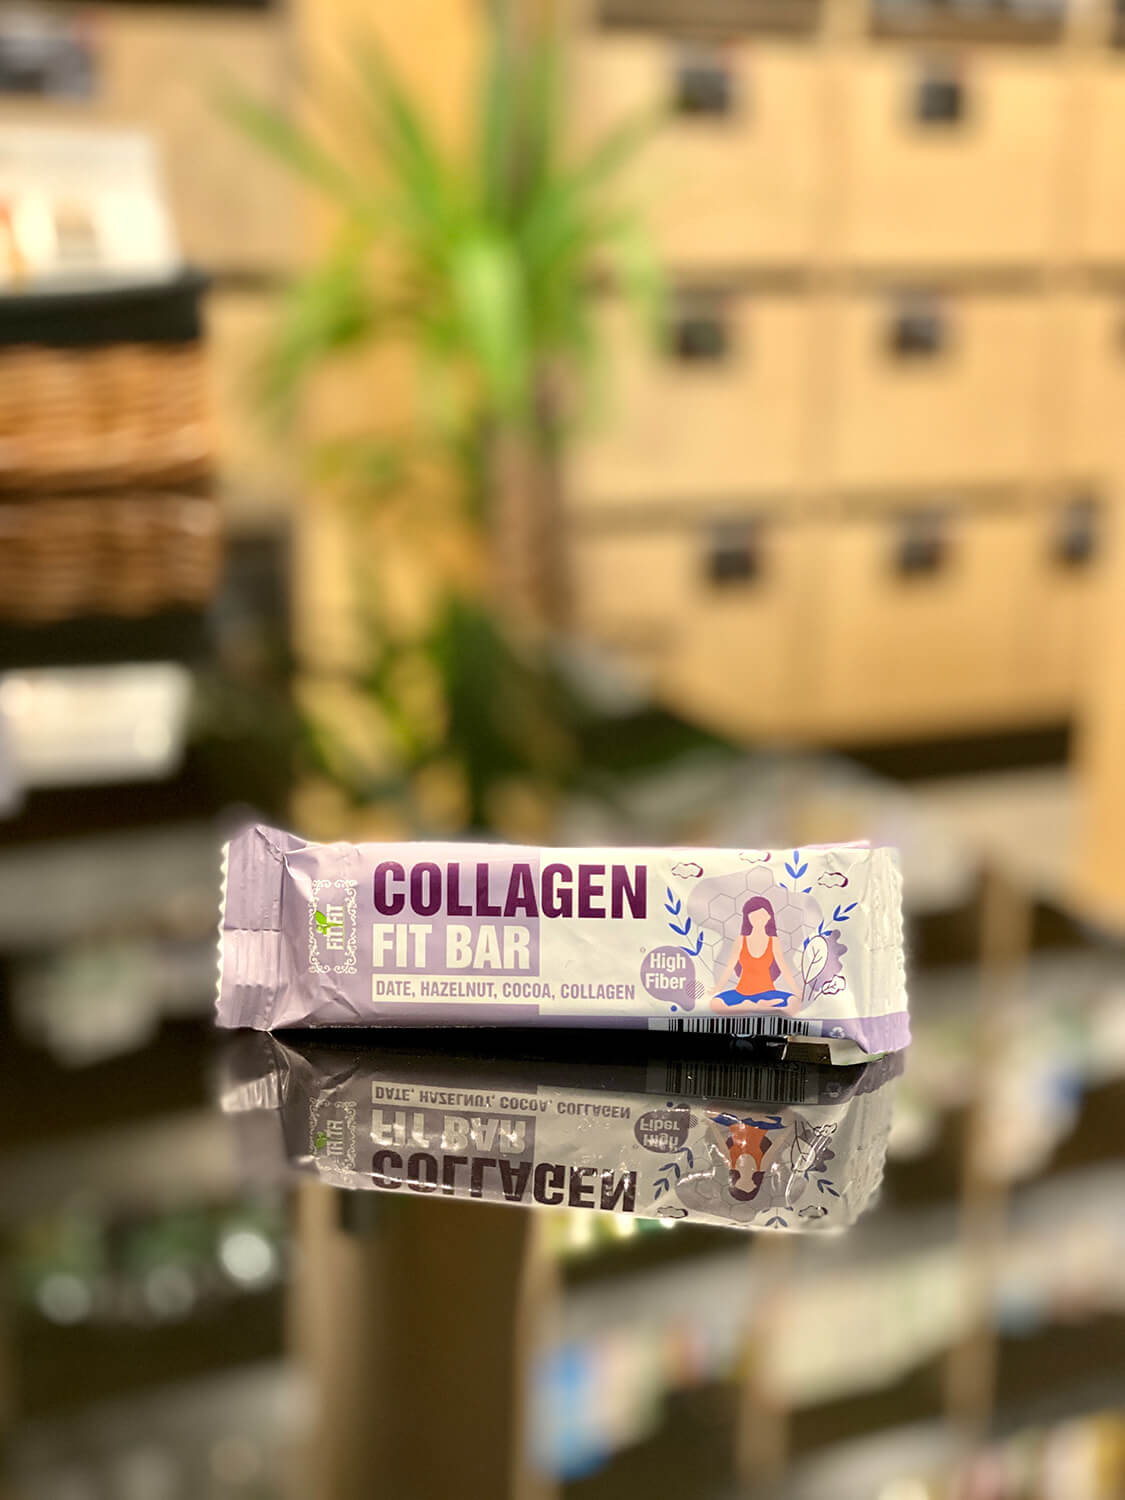 Collagen fit bar